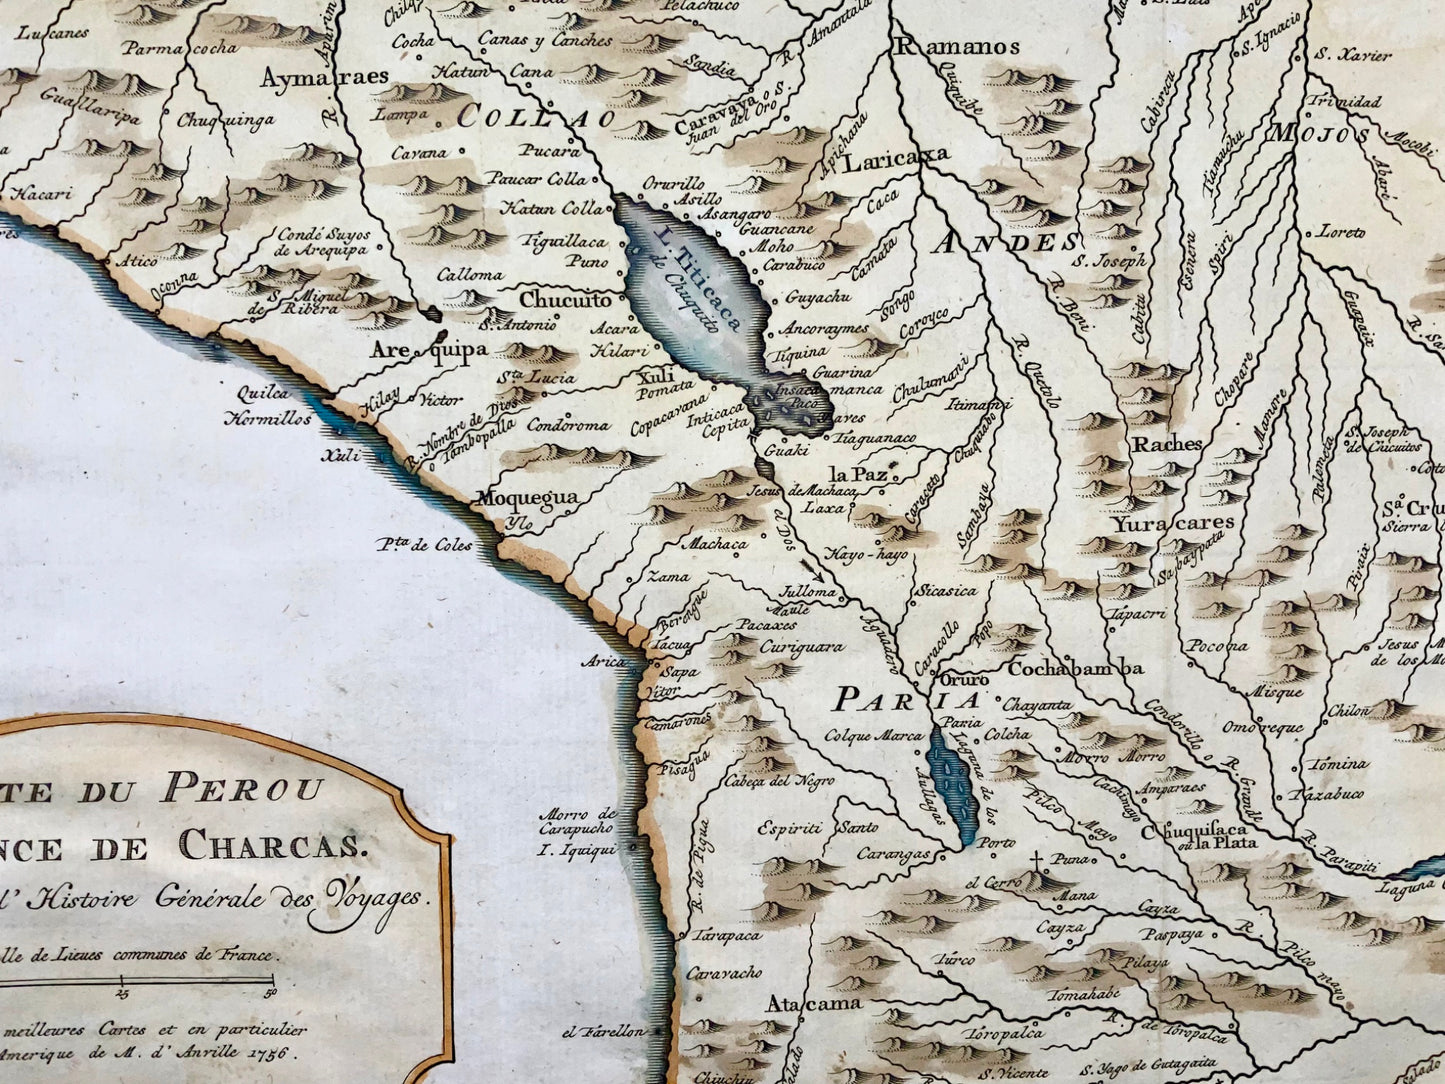 1771 Bellin, Krevel, mappa, Perù e Cile, mappa colorata a mano